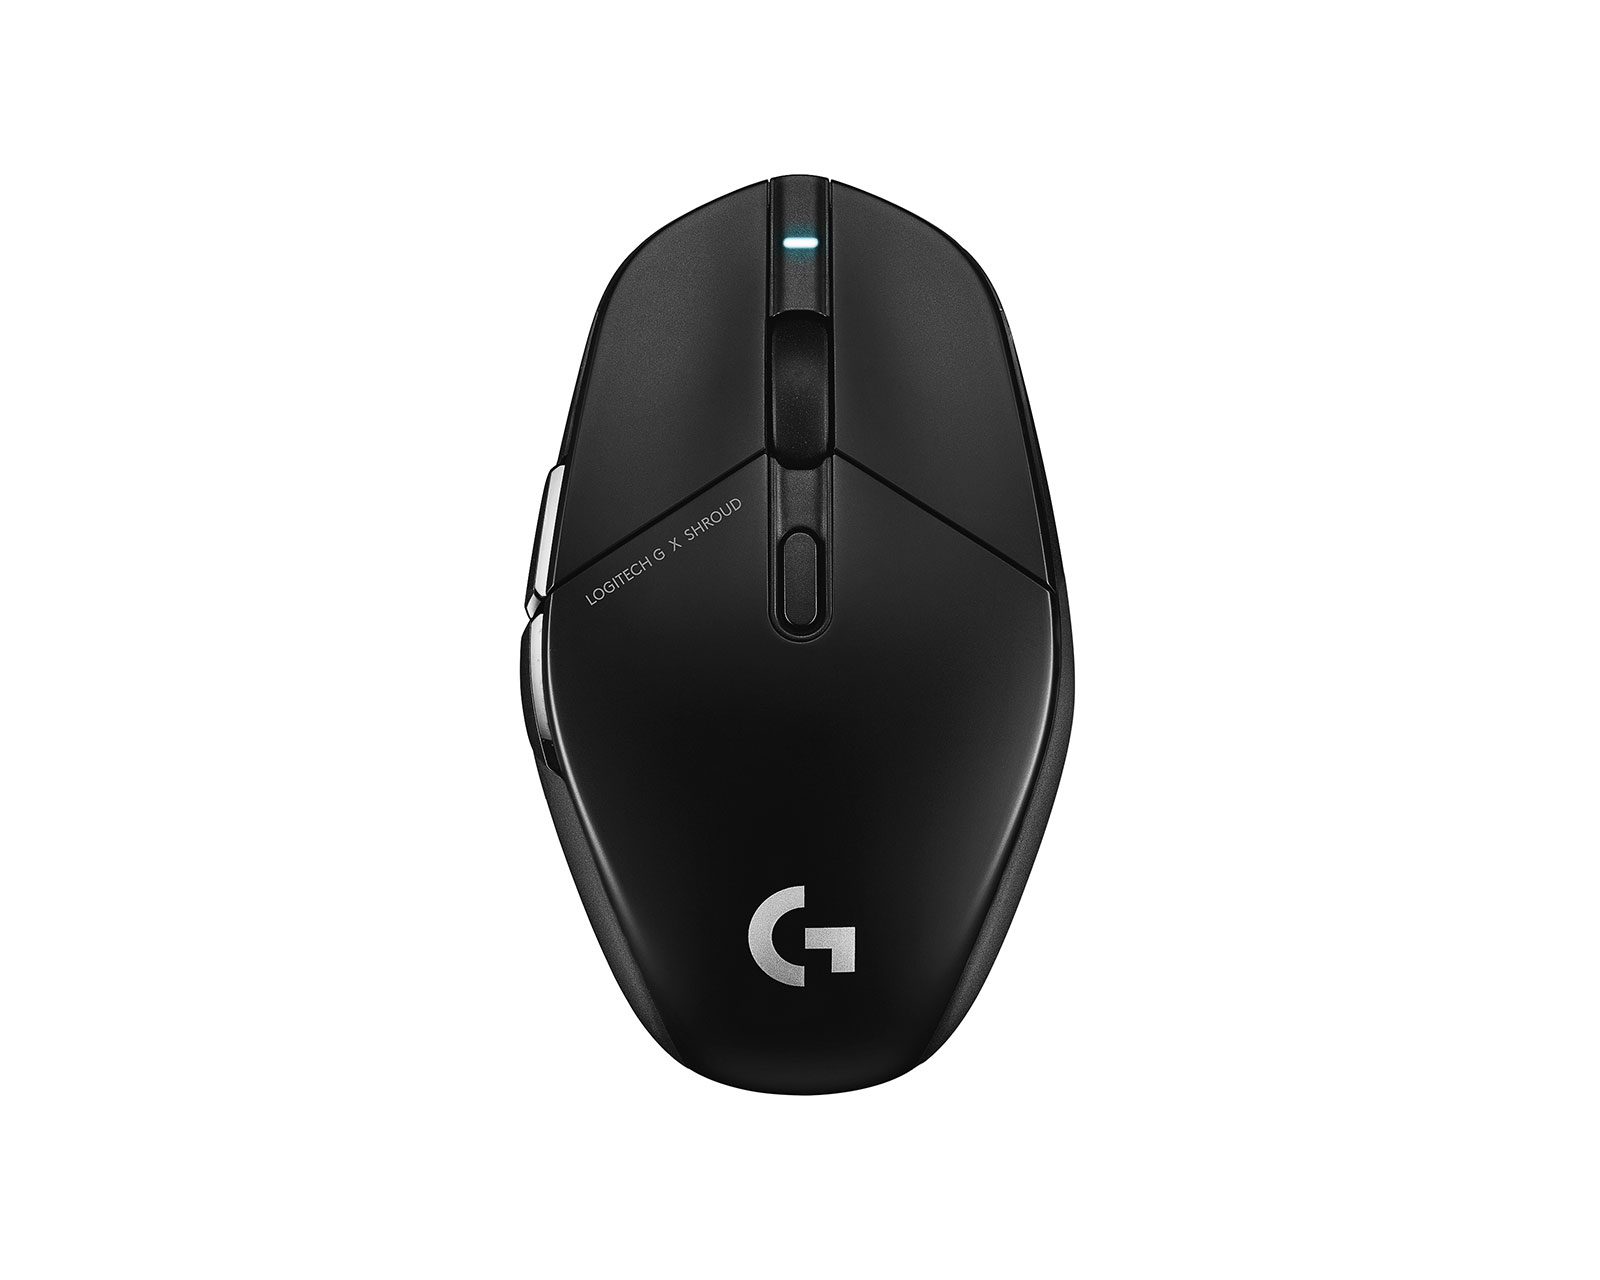 Logitech G502 Lightspeed gaming mouse review: The juggernaut